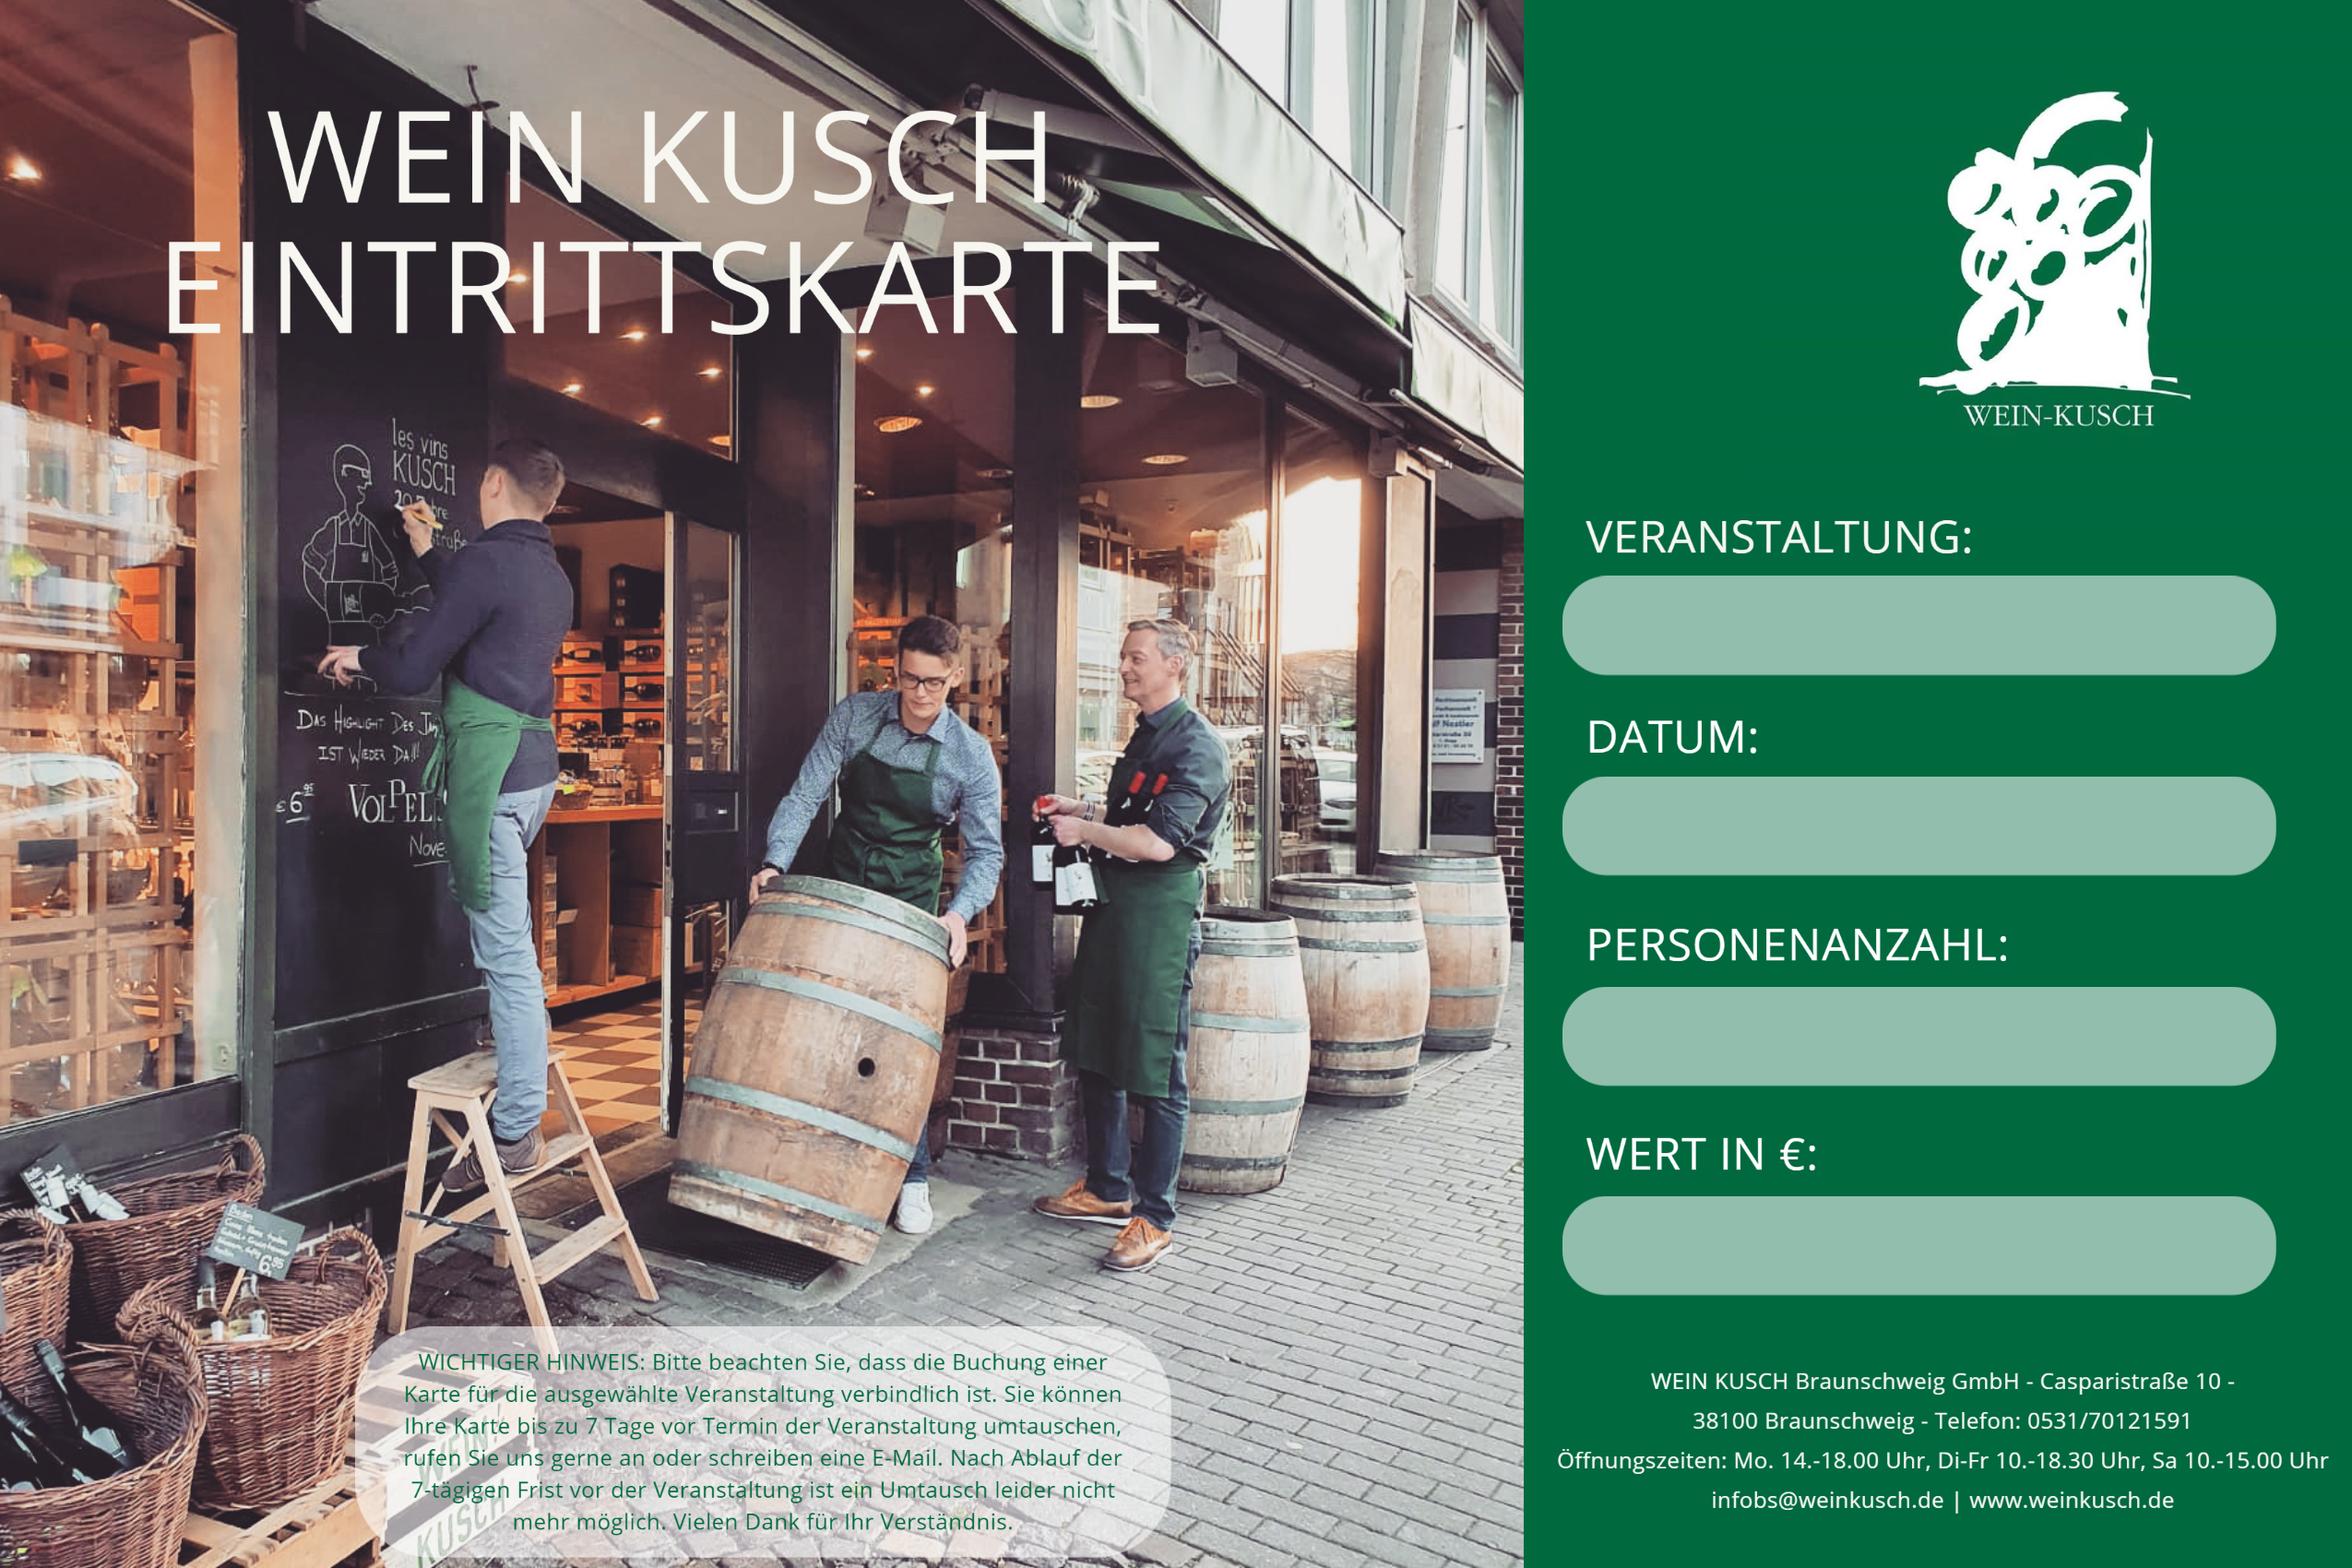 2023.02.10 - Rum Tasting in Braunschweig 19.00 Uhr